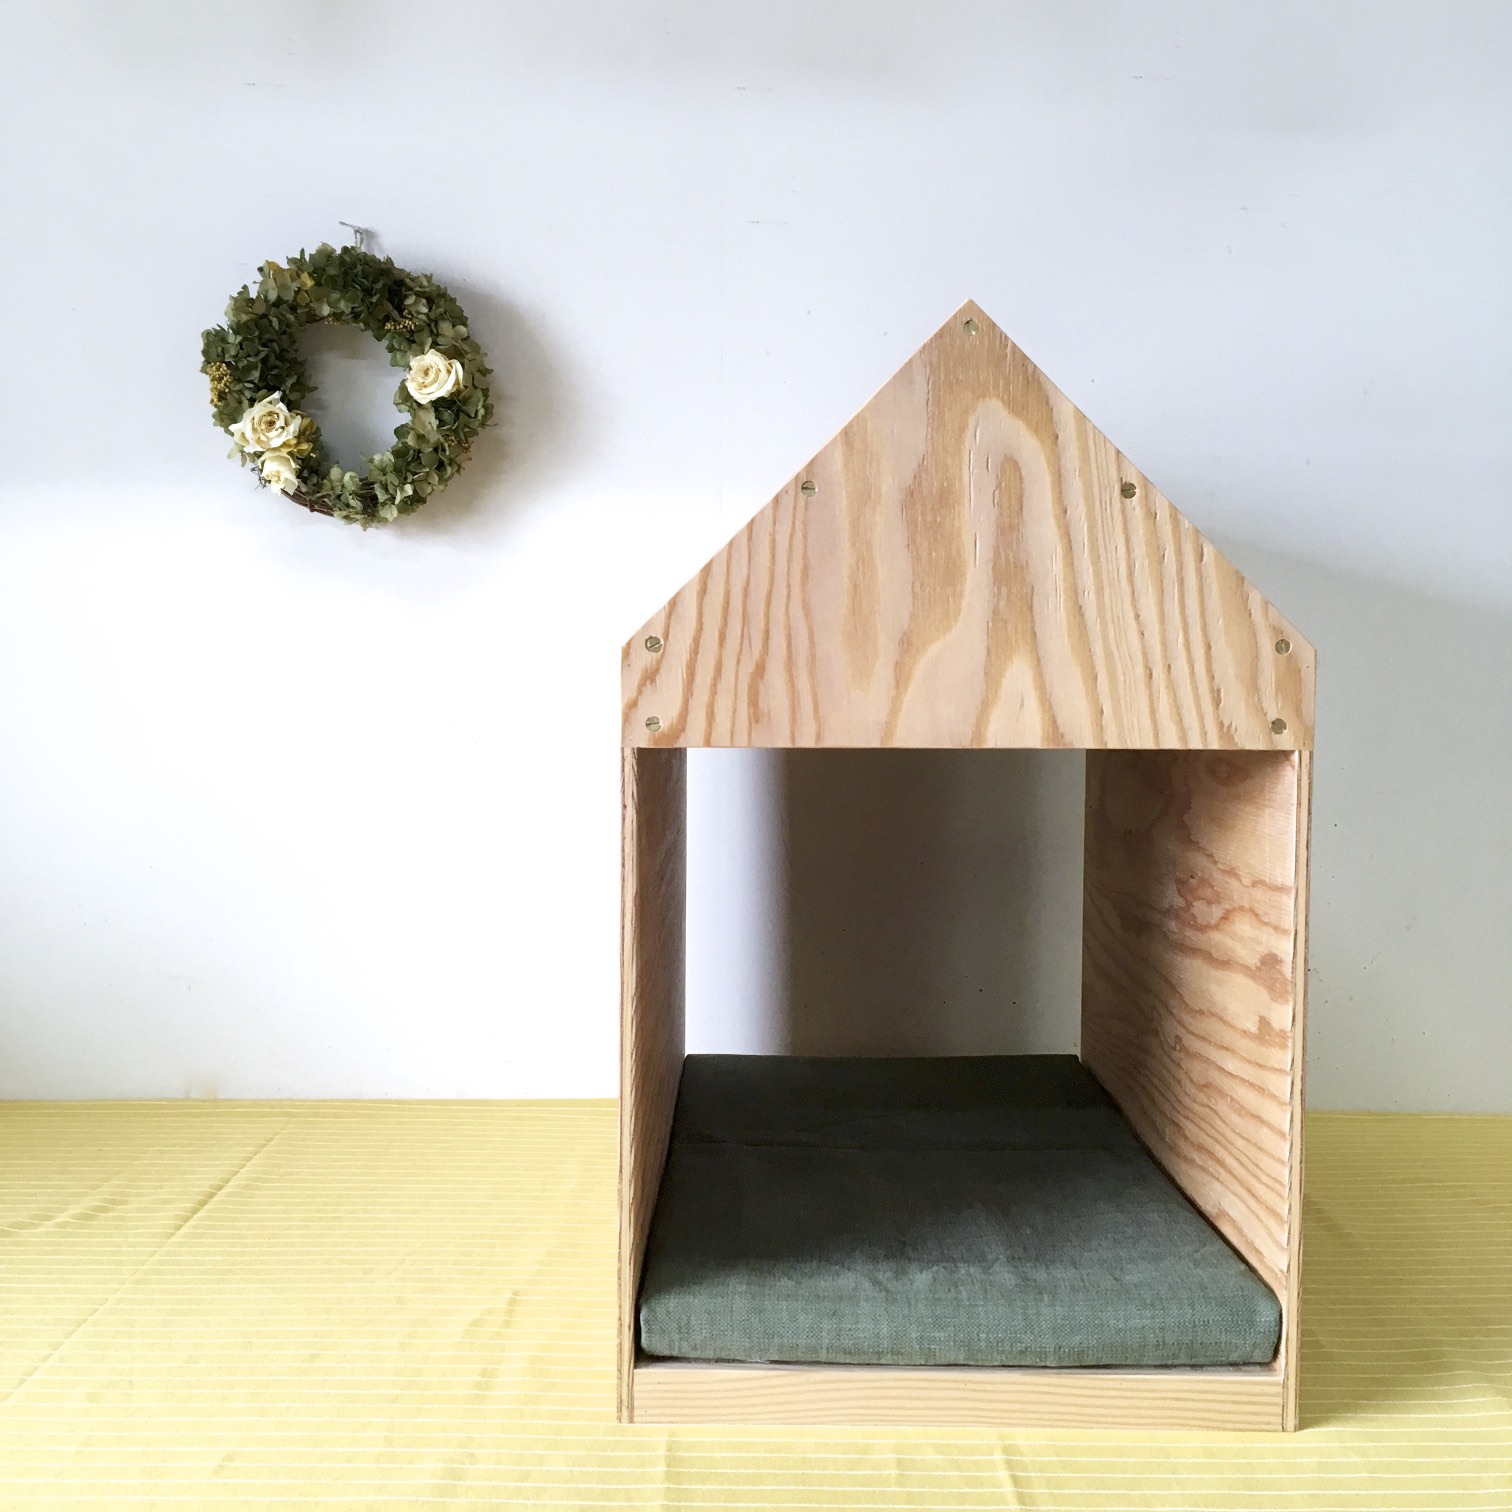 インテリアになる犬小屋 ドッグハウス ペットハウス 木製 ナチュラル 室内用 Iichi ハンドメイド クラフト作品 手仕事品の通販